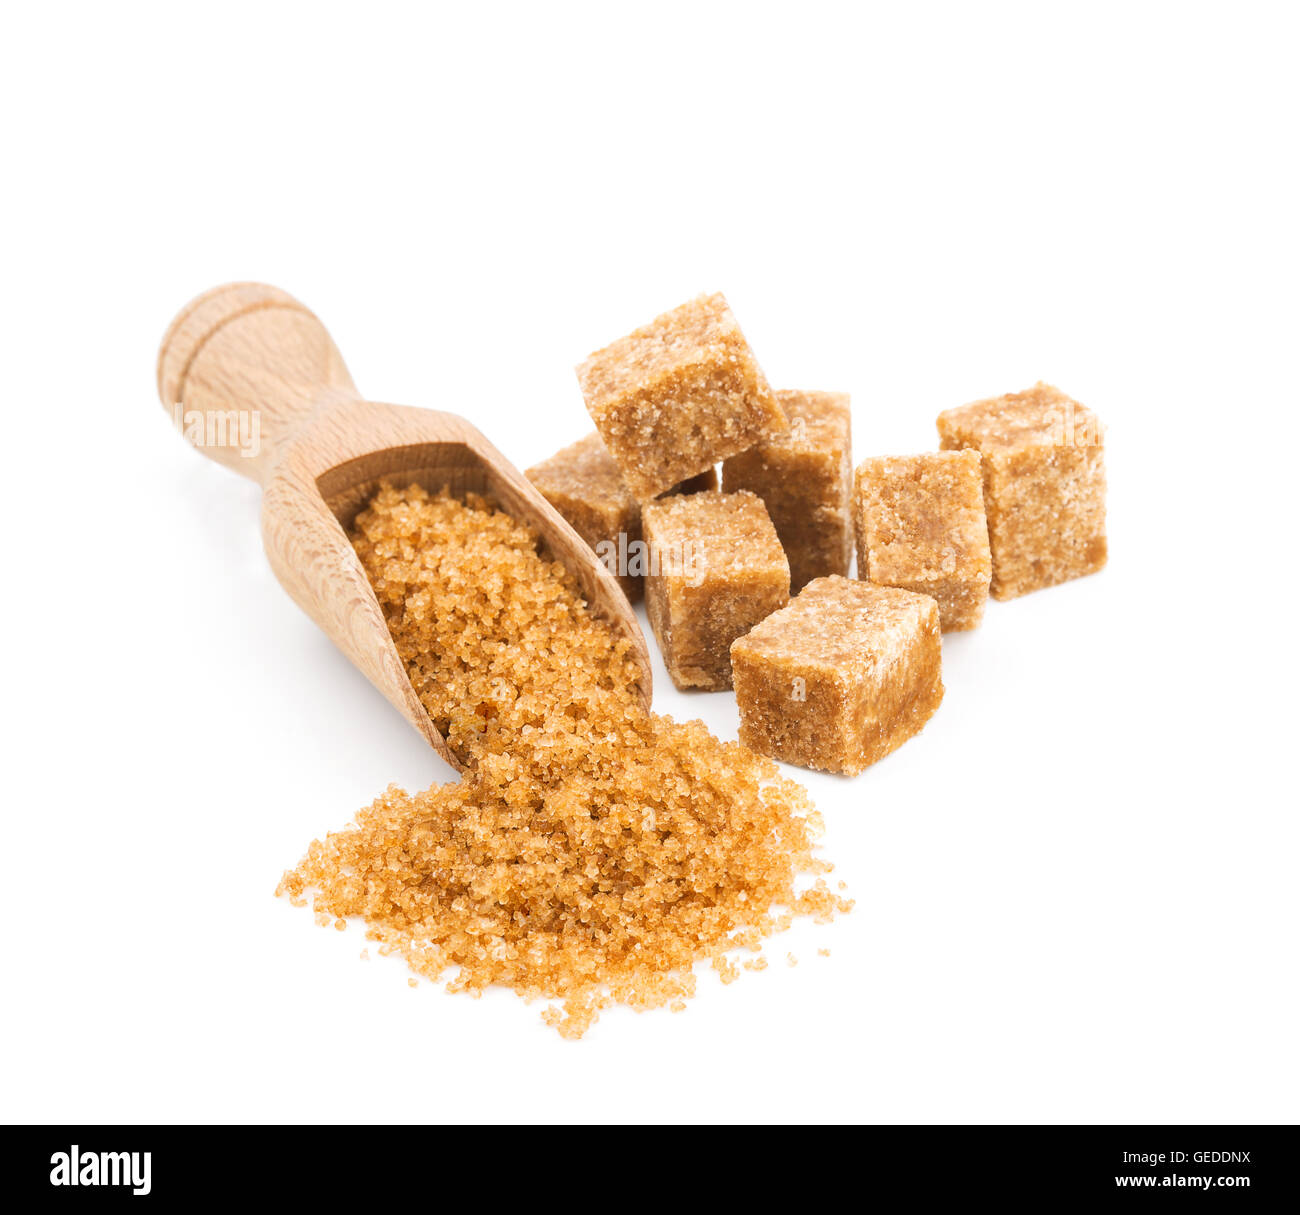 El azúcar moreno en una cuchara de madera aislado en blanco Foto de stock